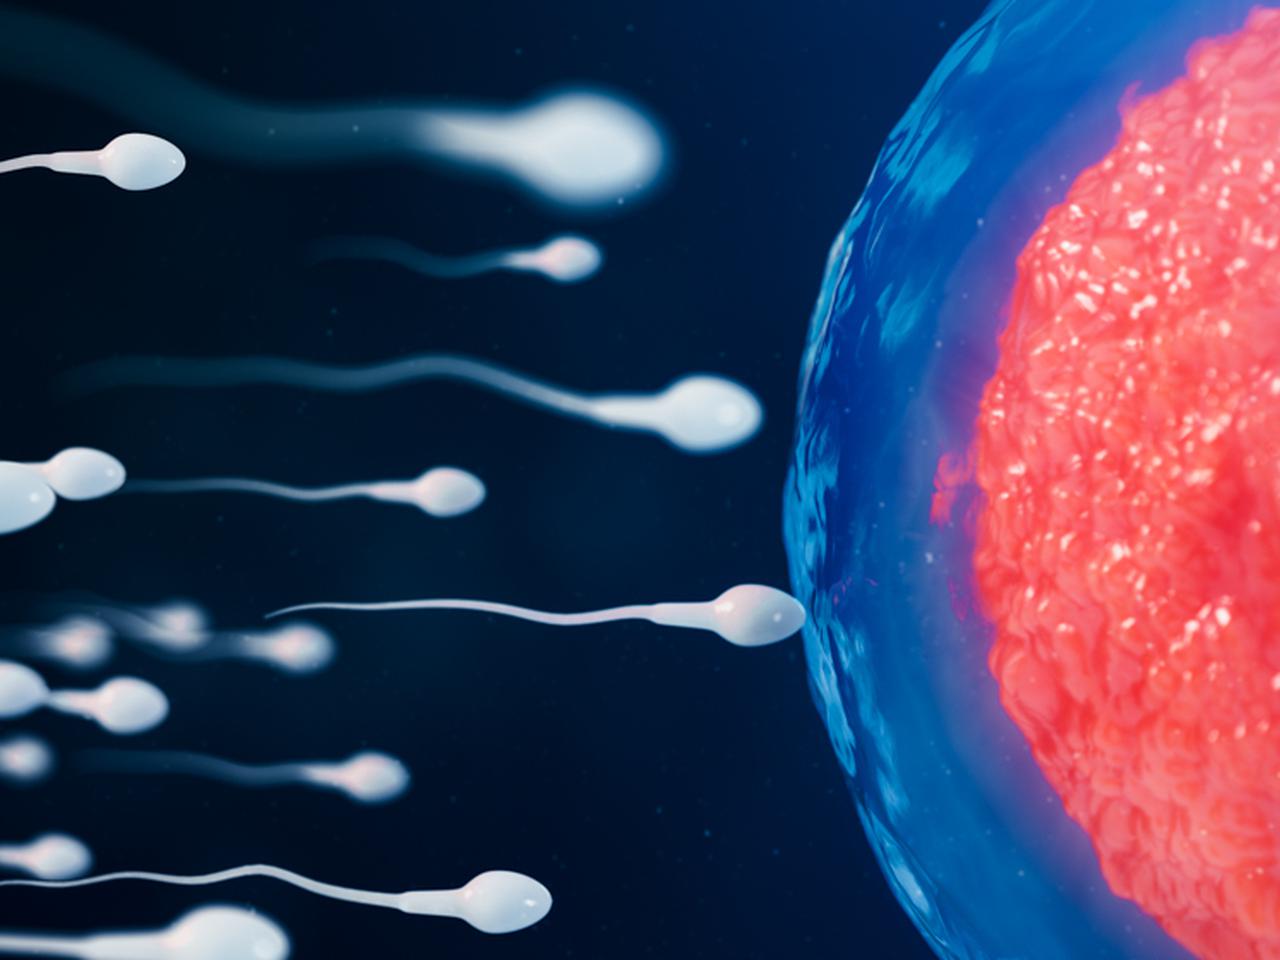 Срок жизни сперматозоида